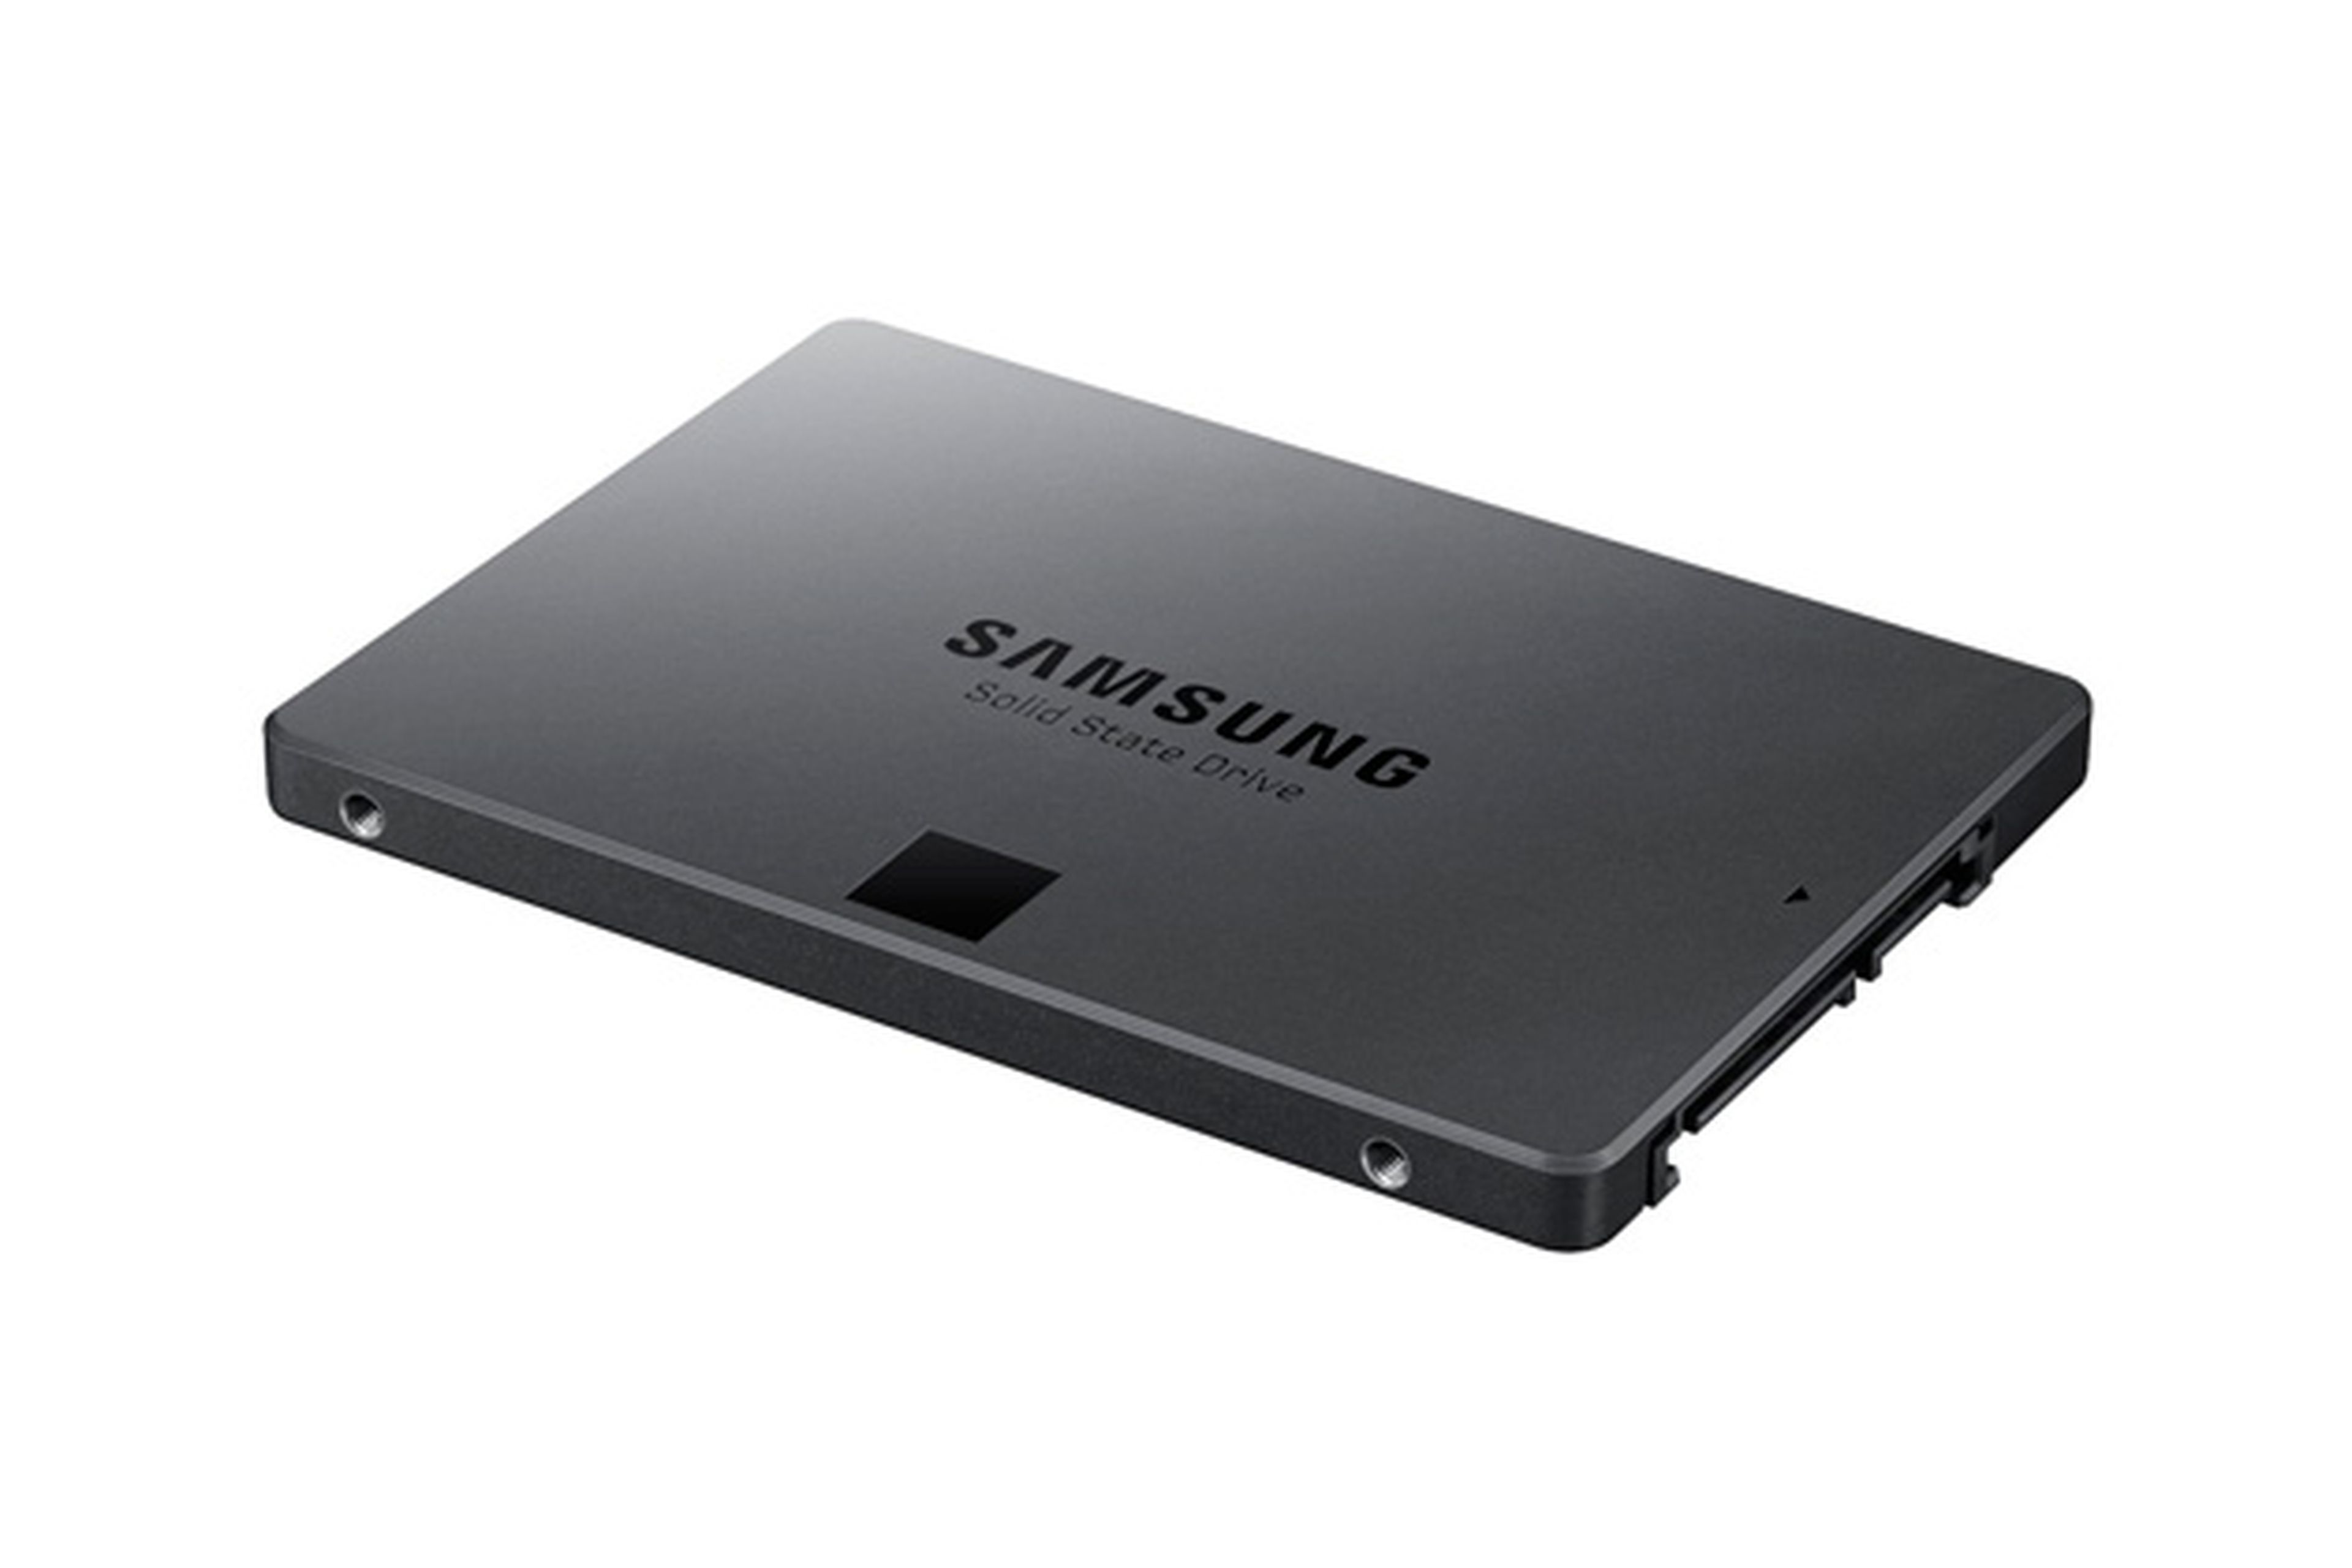 Samsung 840 Evo 250GB